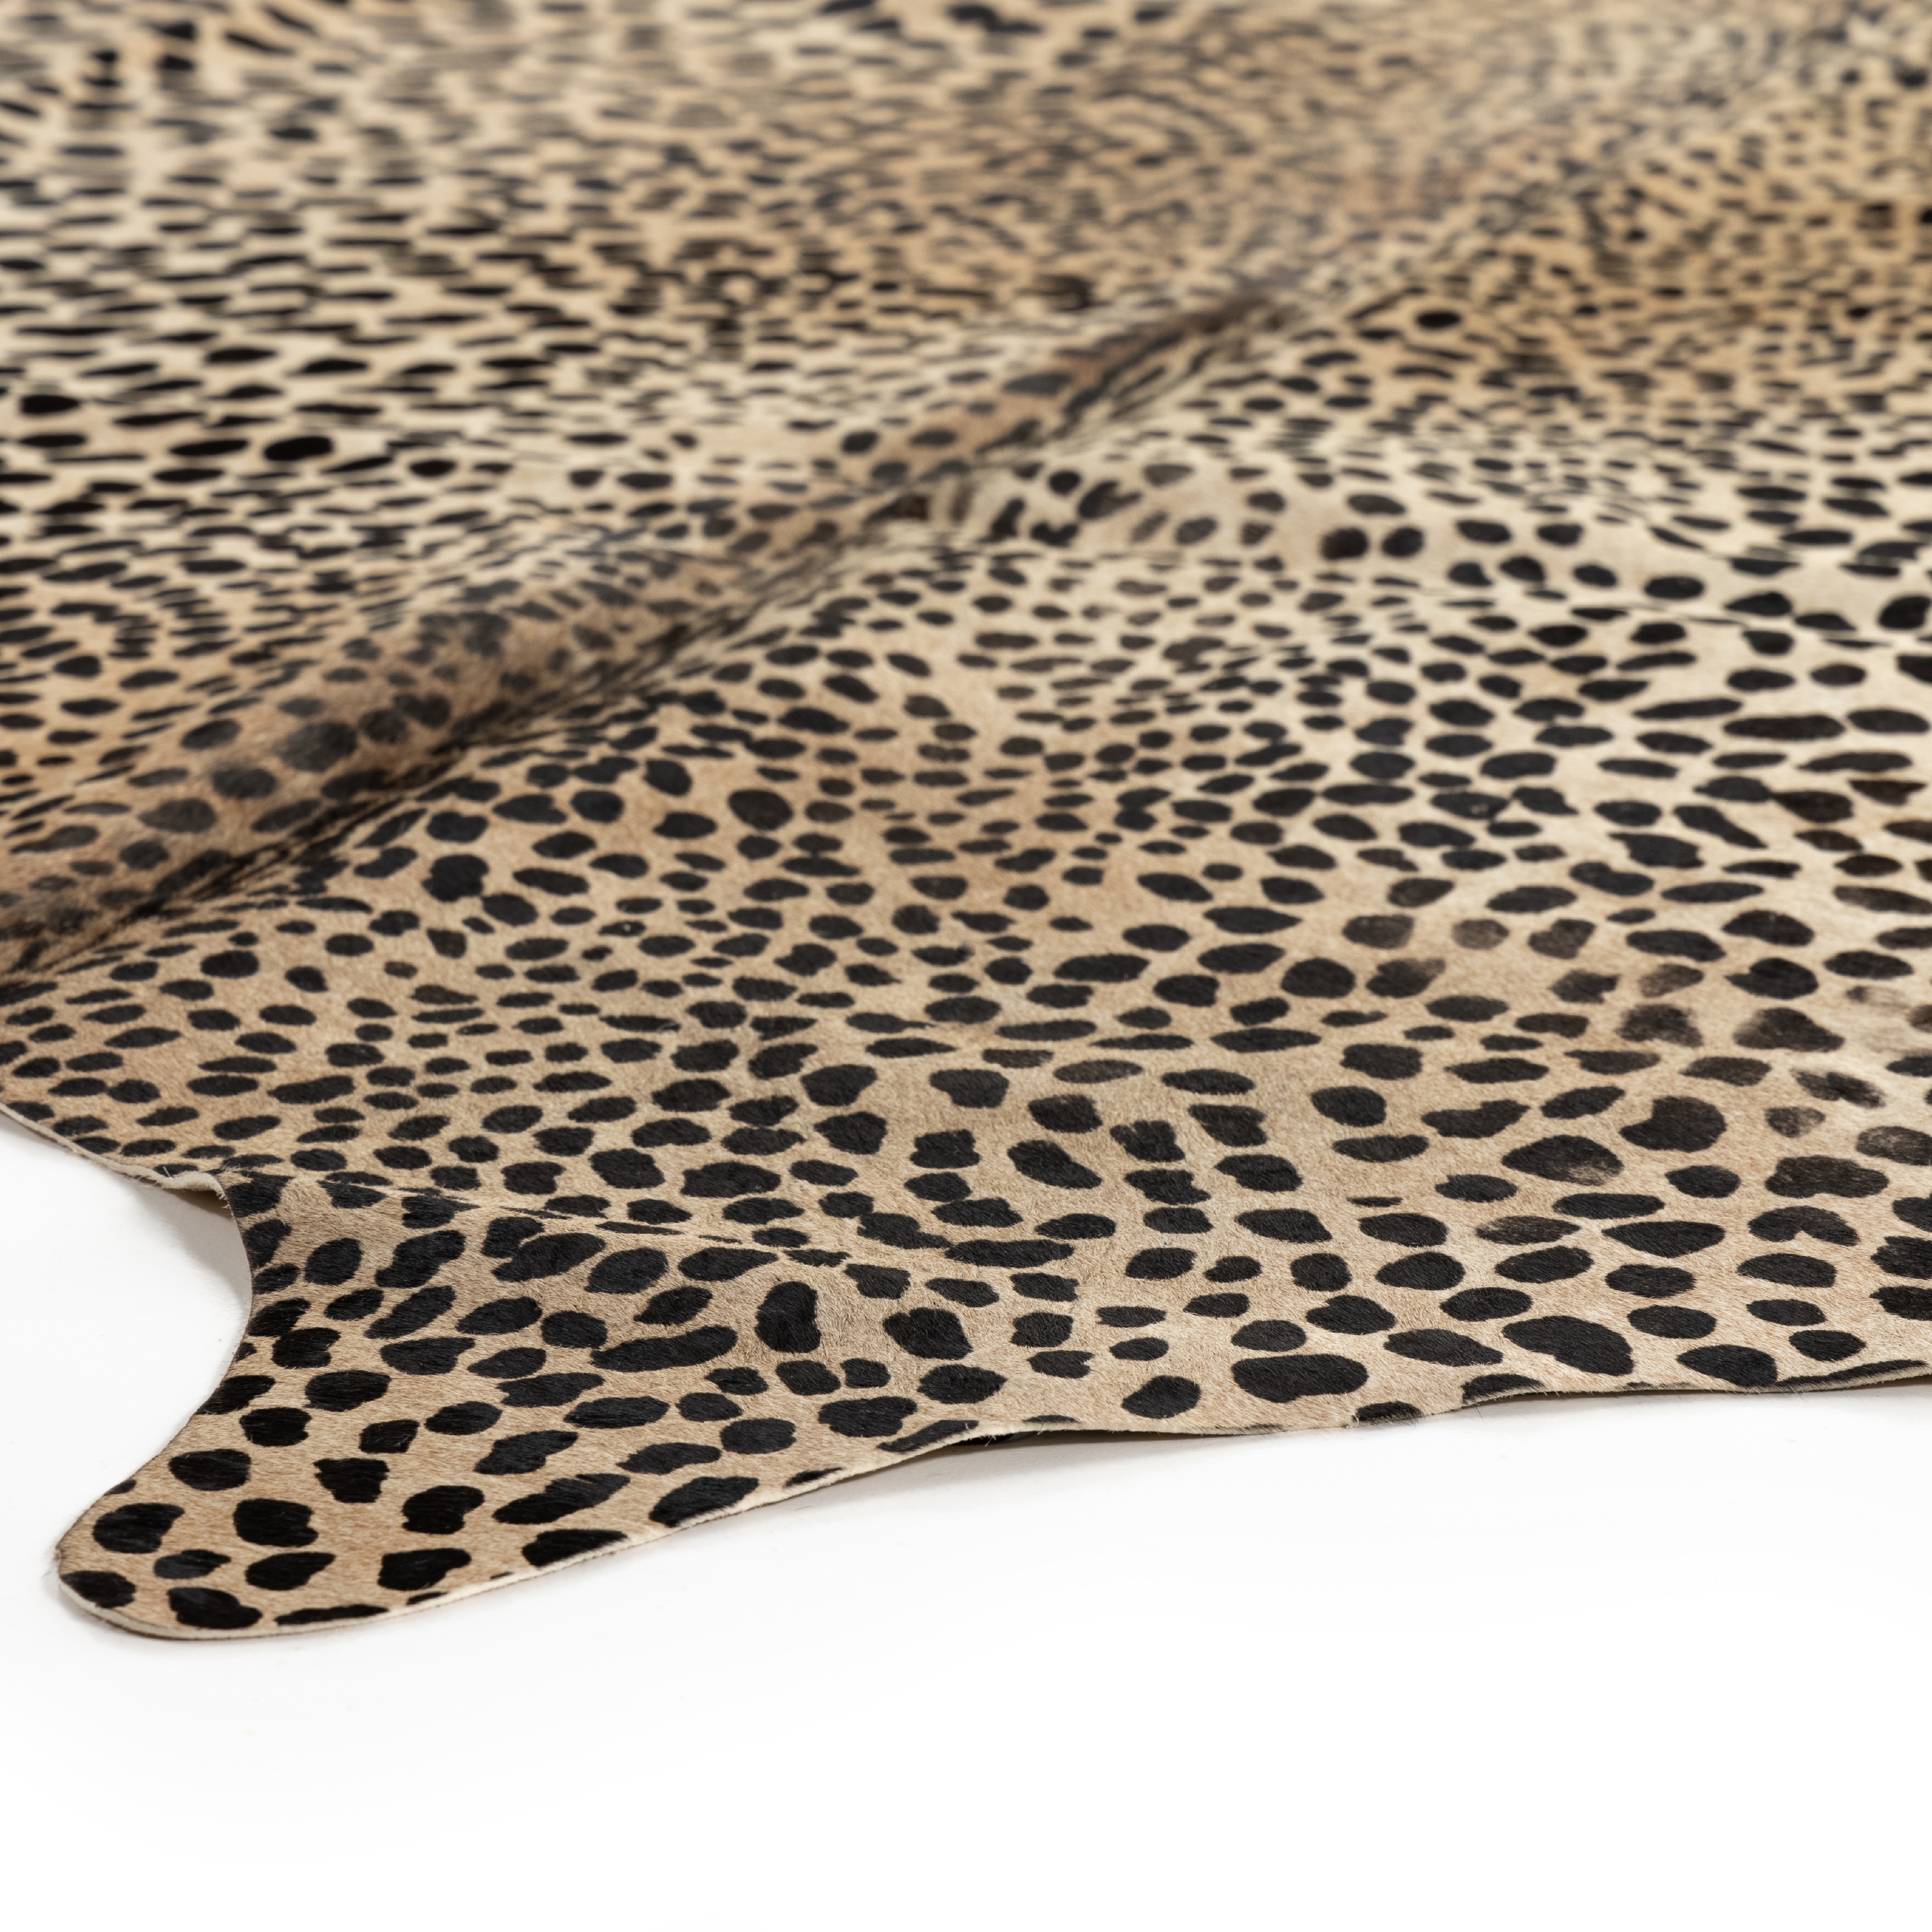 Leopard Printed Hide Rug-Brown & Black - Image 2